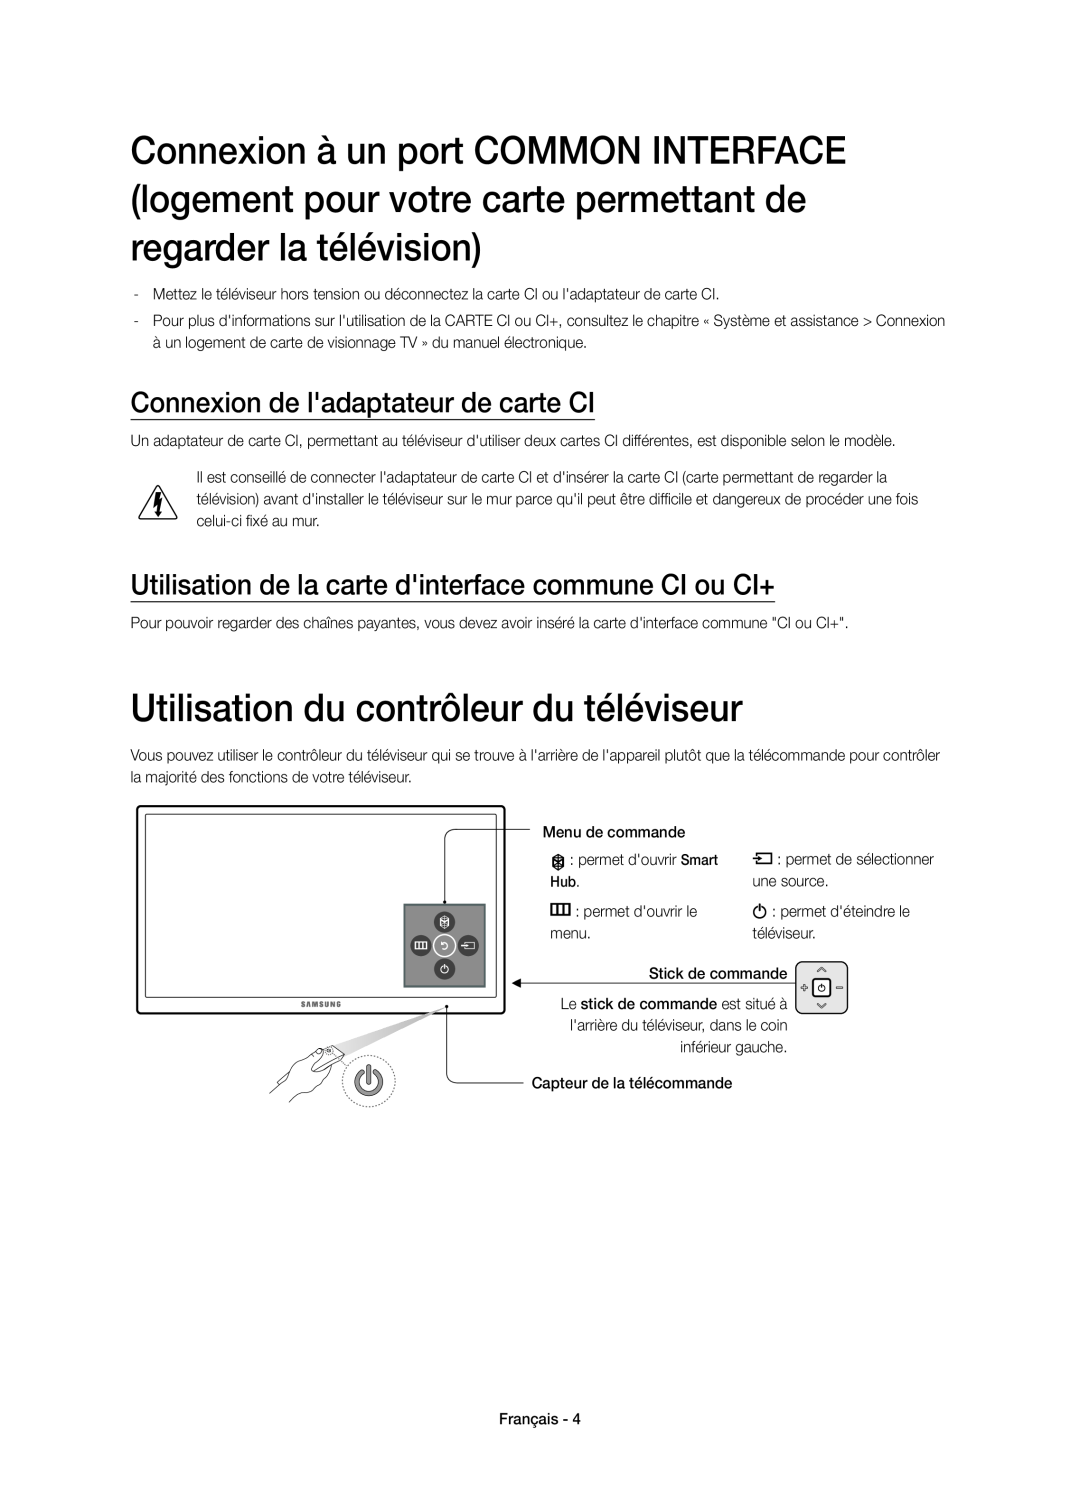 Samsung UE55JU6670SXXN, UE40JU6750UXZG manual Utilisation du contrôleur du téléviseur, Connexion de ladaptateur de carte CI 